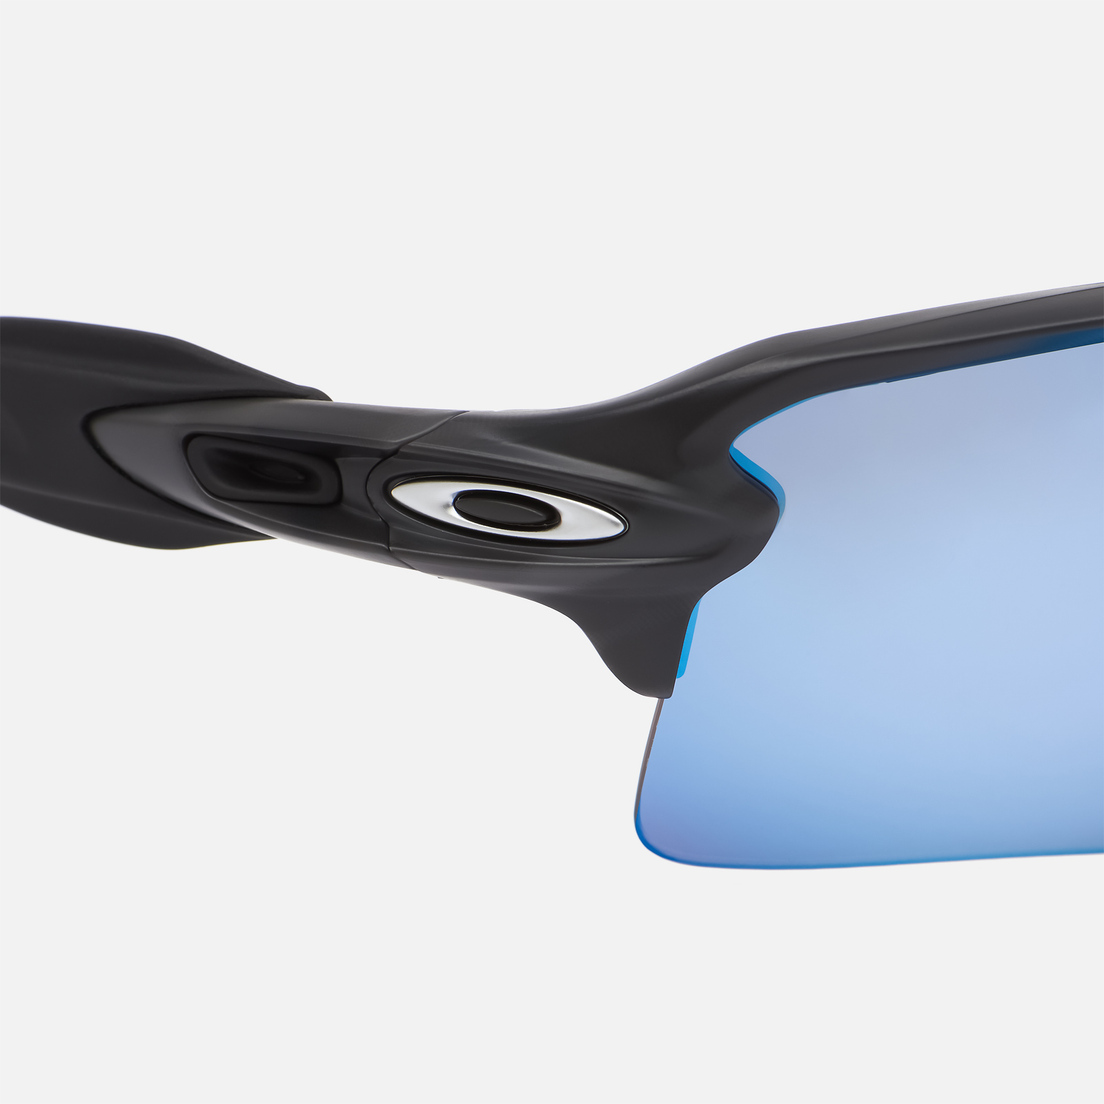 Oakley Солнцезащитные очки Flak 2.0 XL Polarized